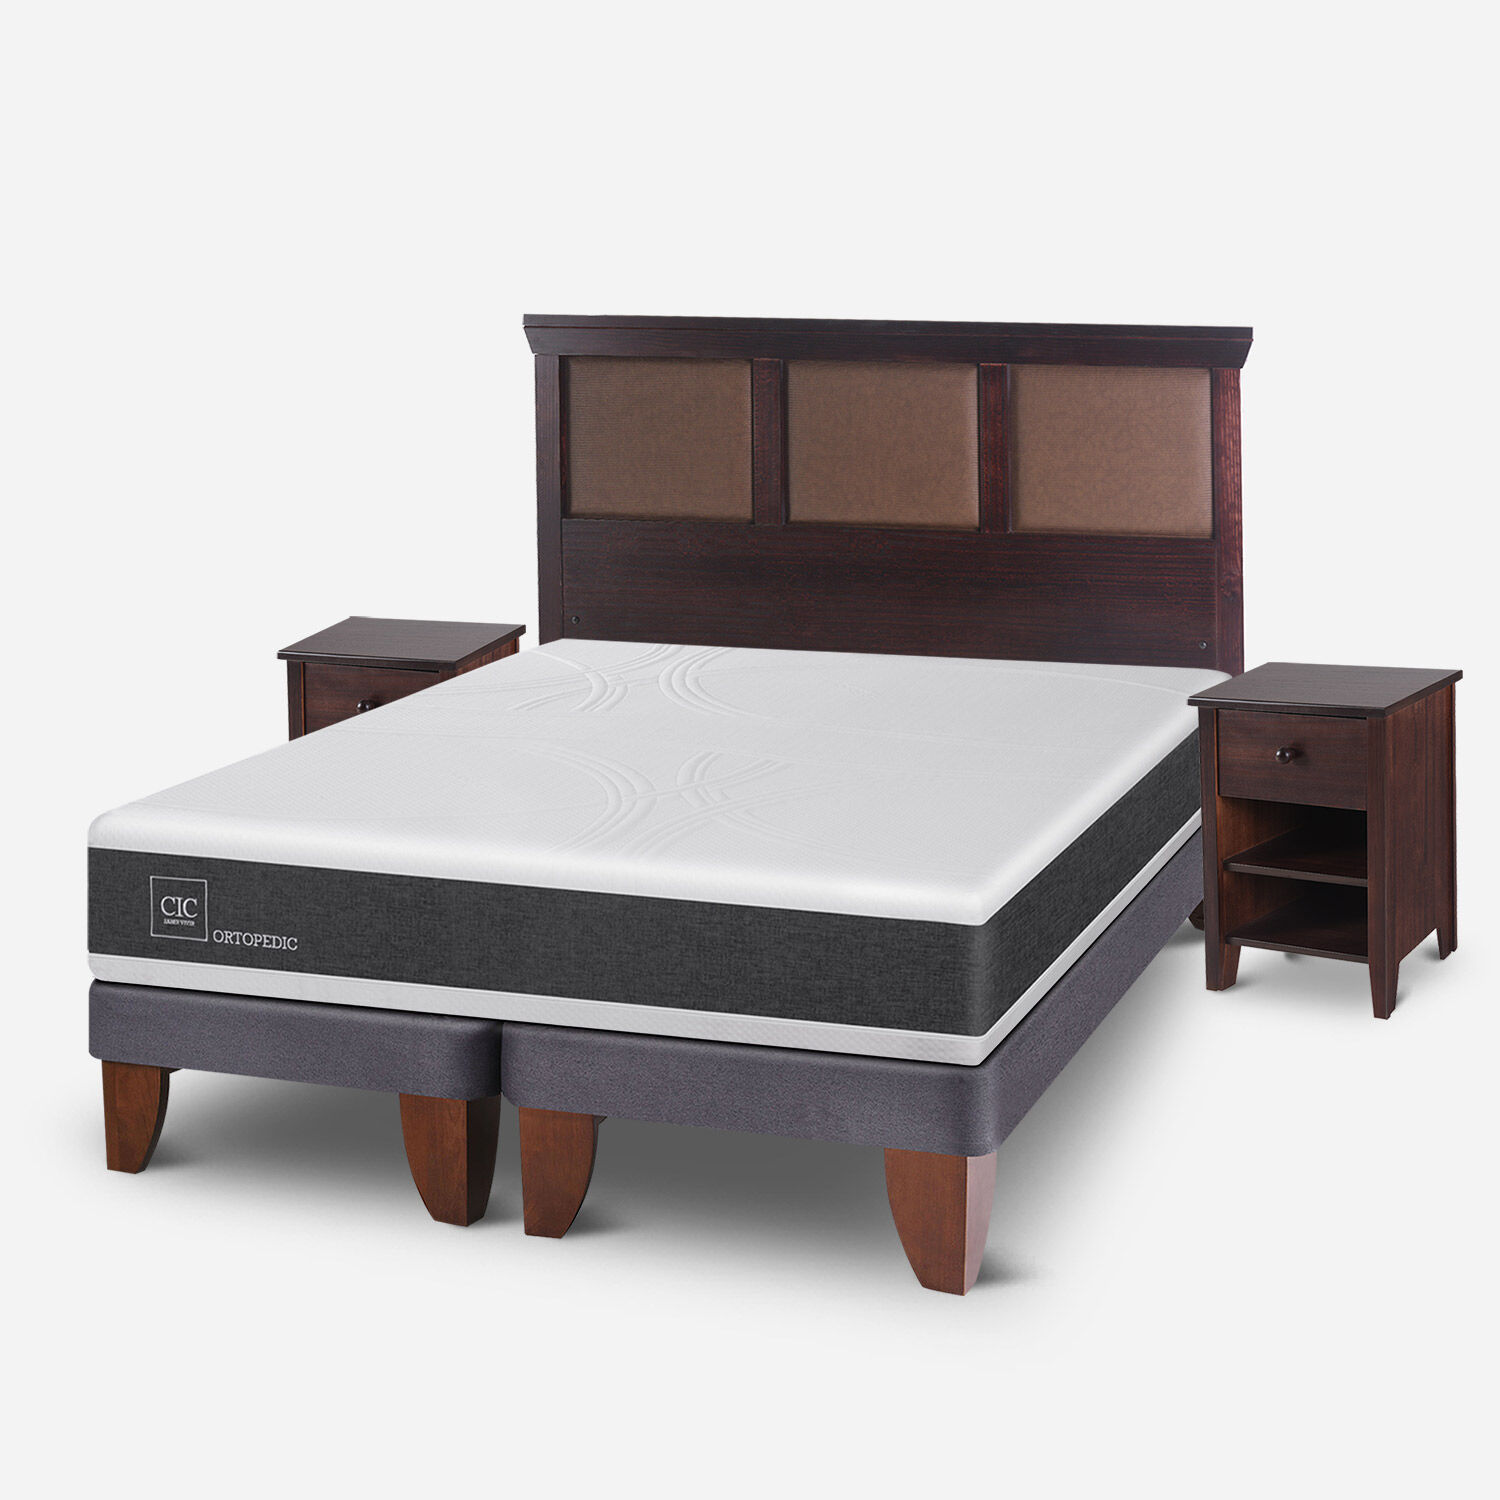 Kit de Base de cama Oriental + Respaldo Clásico (2 plazas)